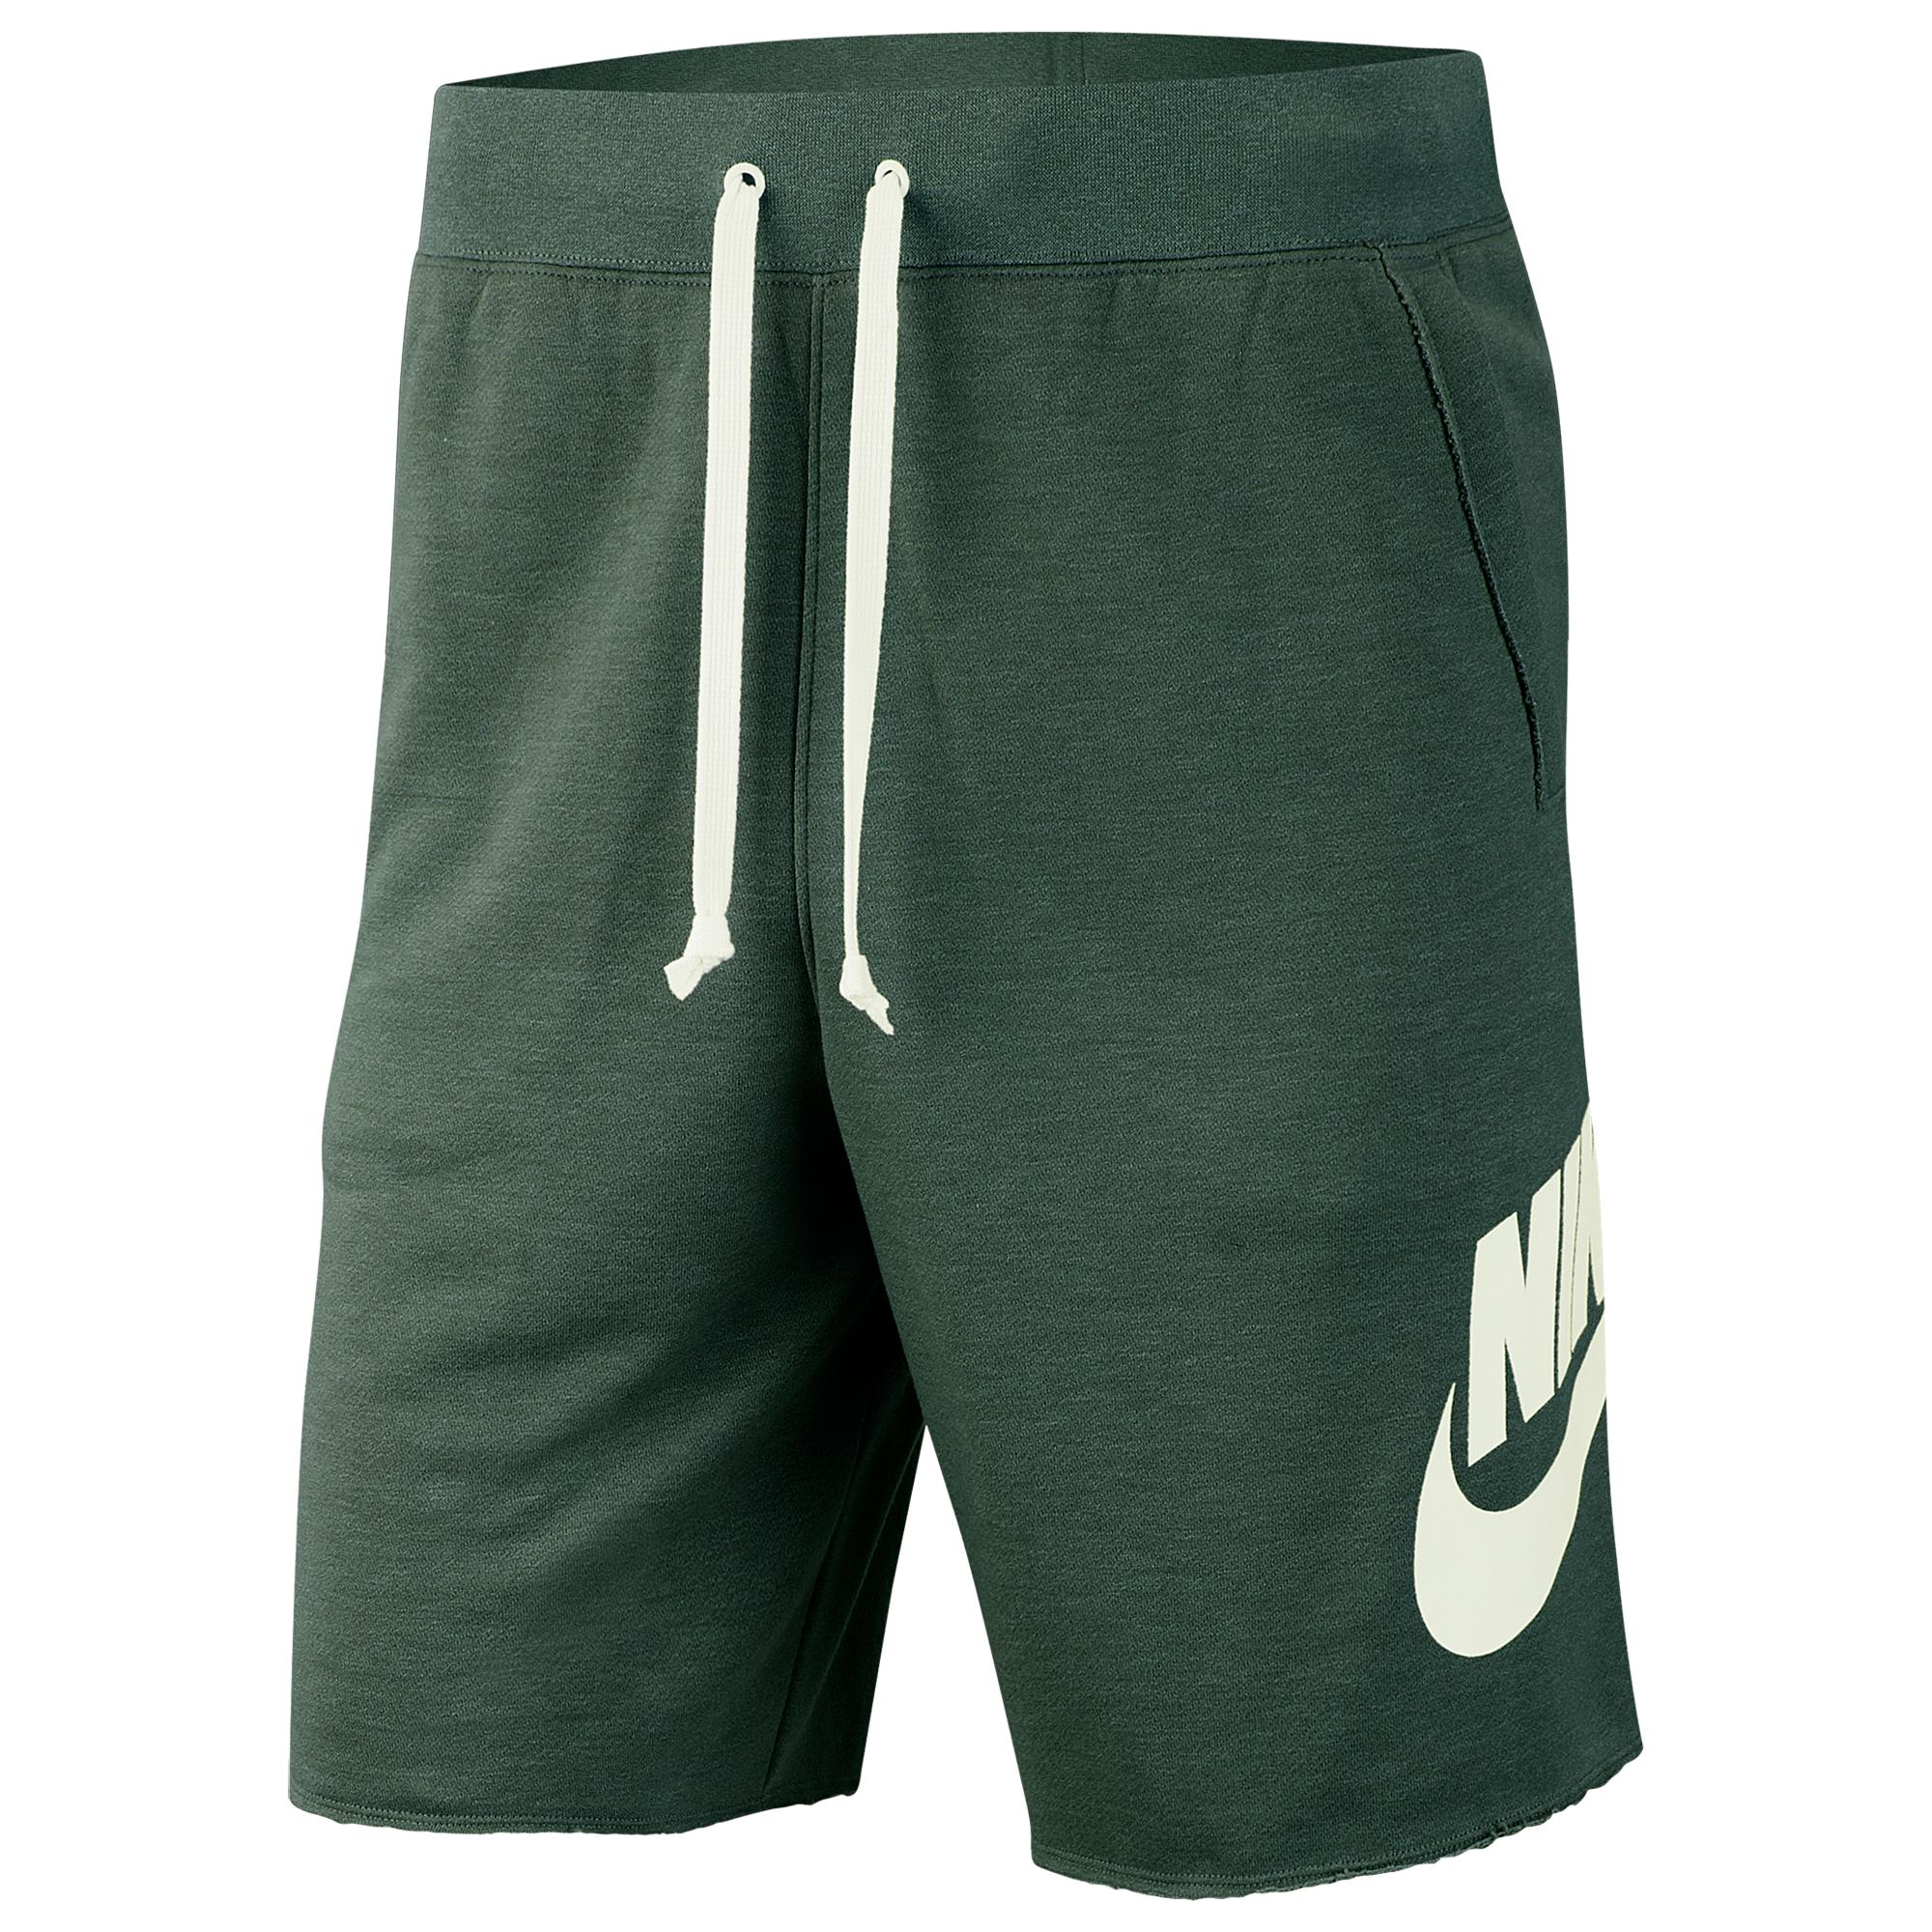 Nike Alumni Shorts in Green for Men - Lyst